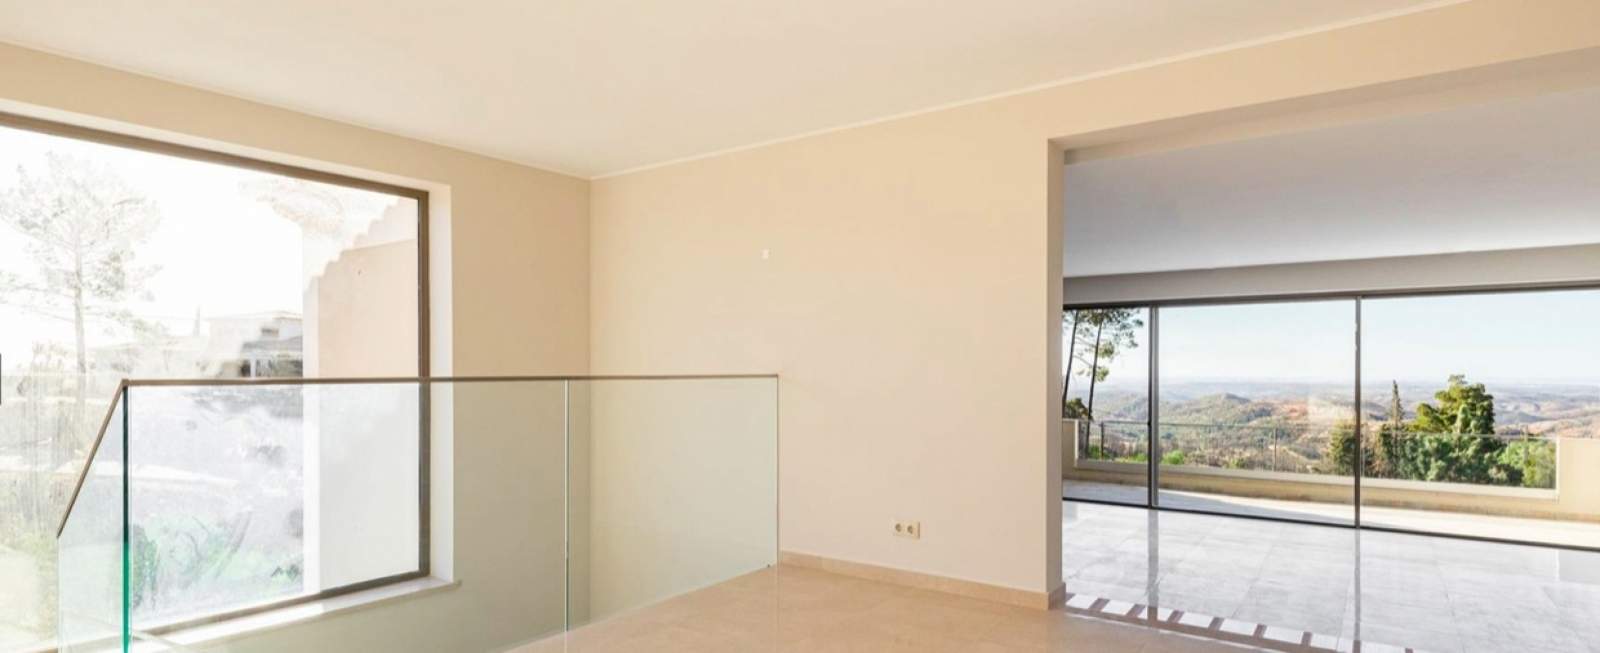 Casa de 4 dormitorios con piscina, de nueva construcción, en venta, Monchique, Algarve_191583